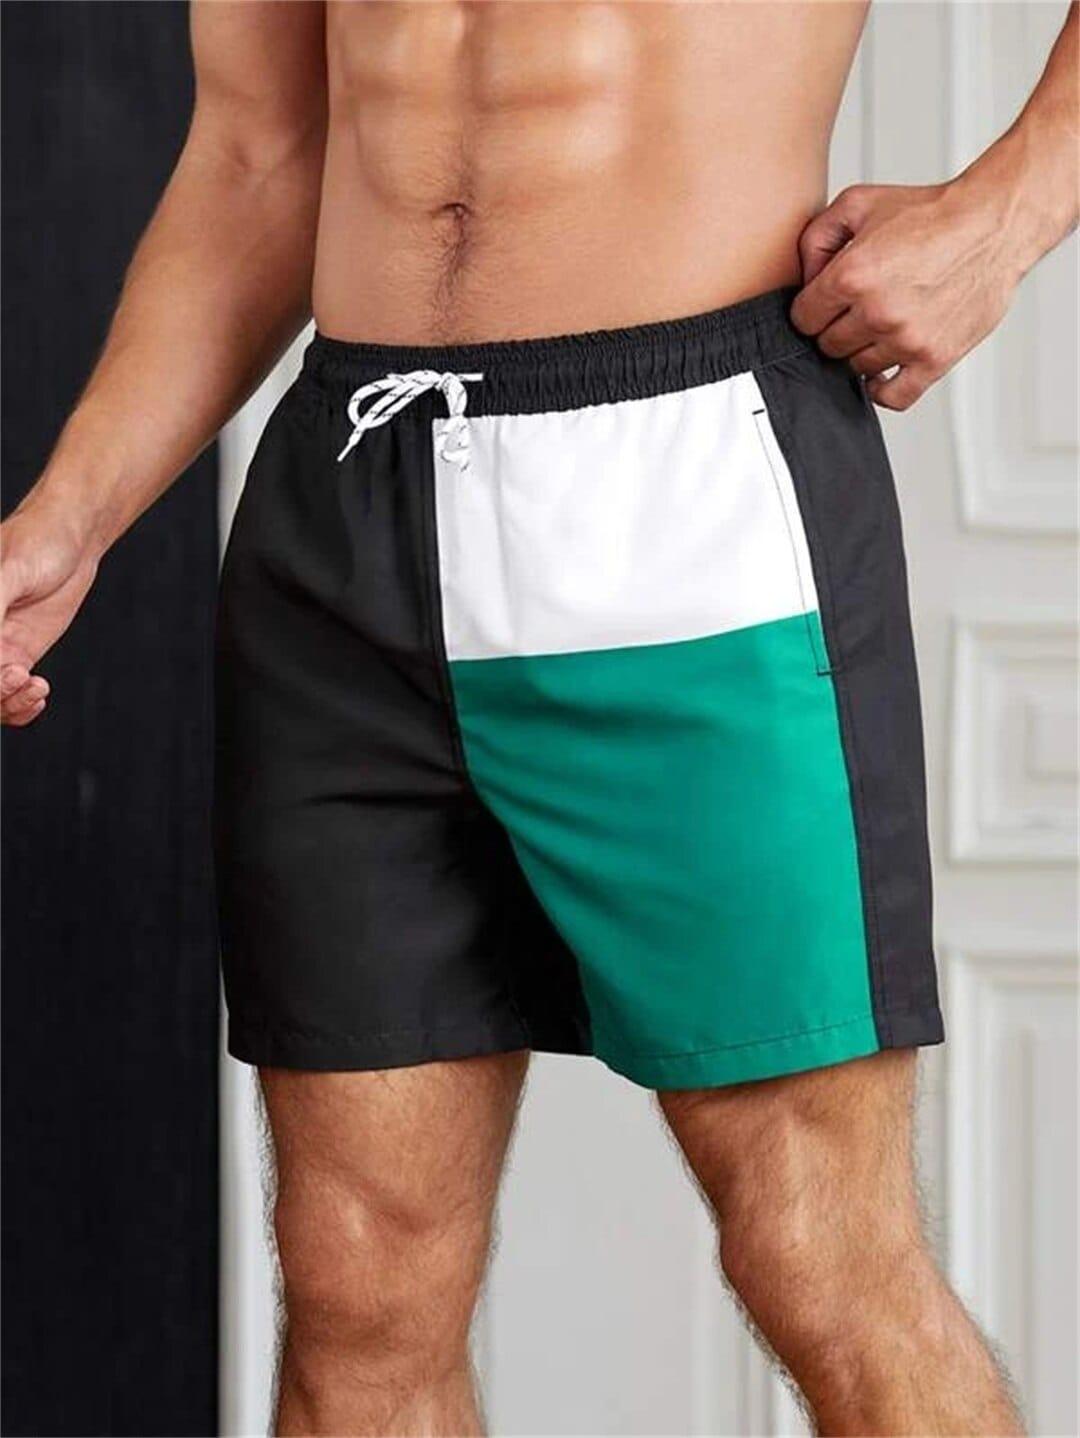 Jonathan short swim trunks (Plus sizes) Verso Black & Green S 